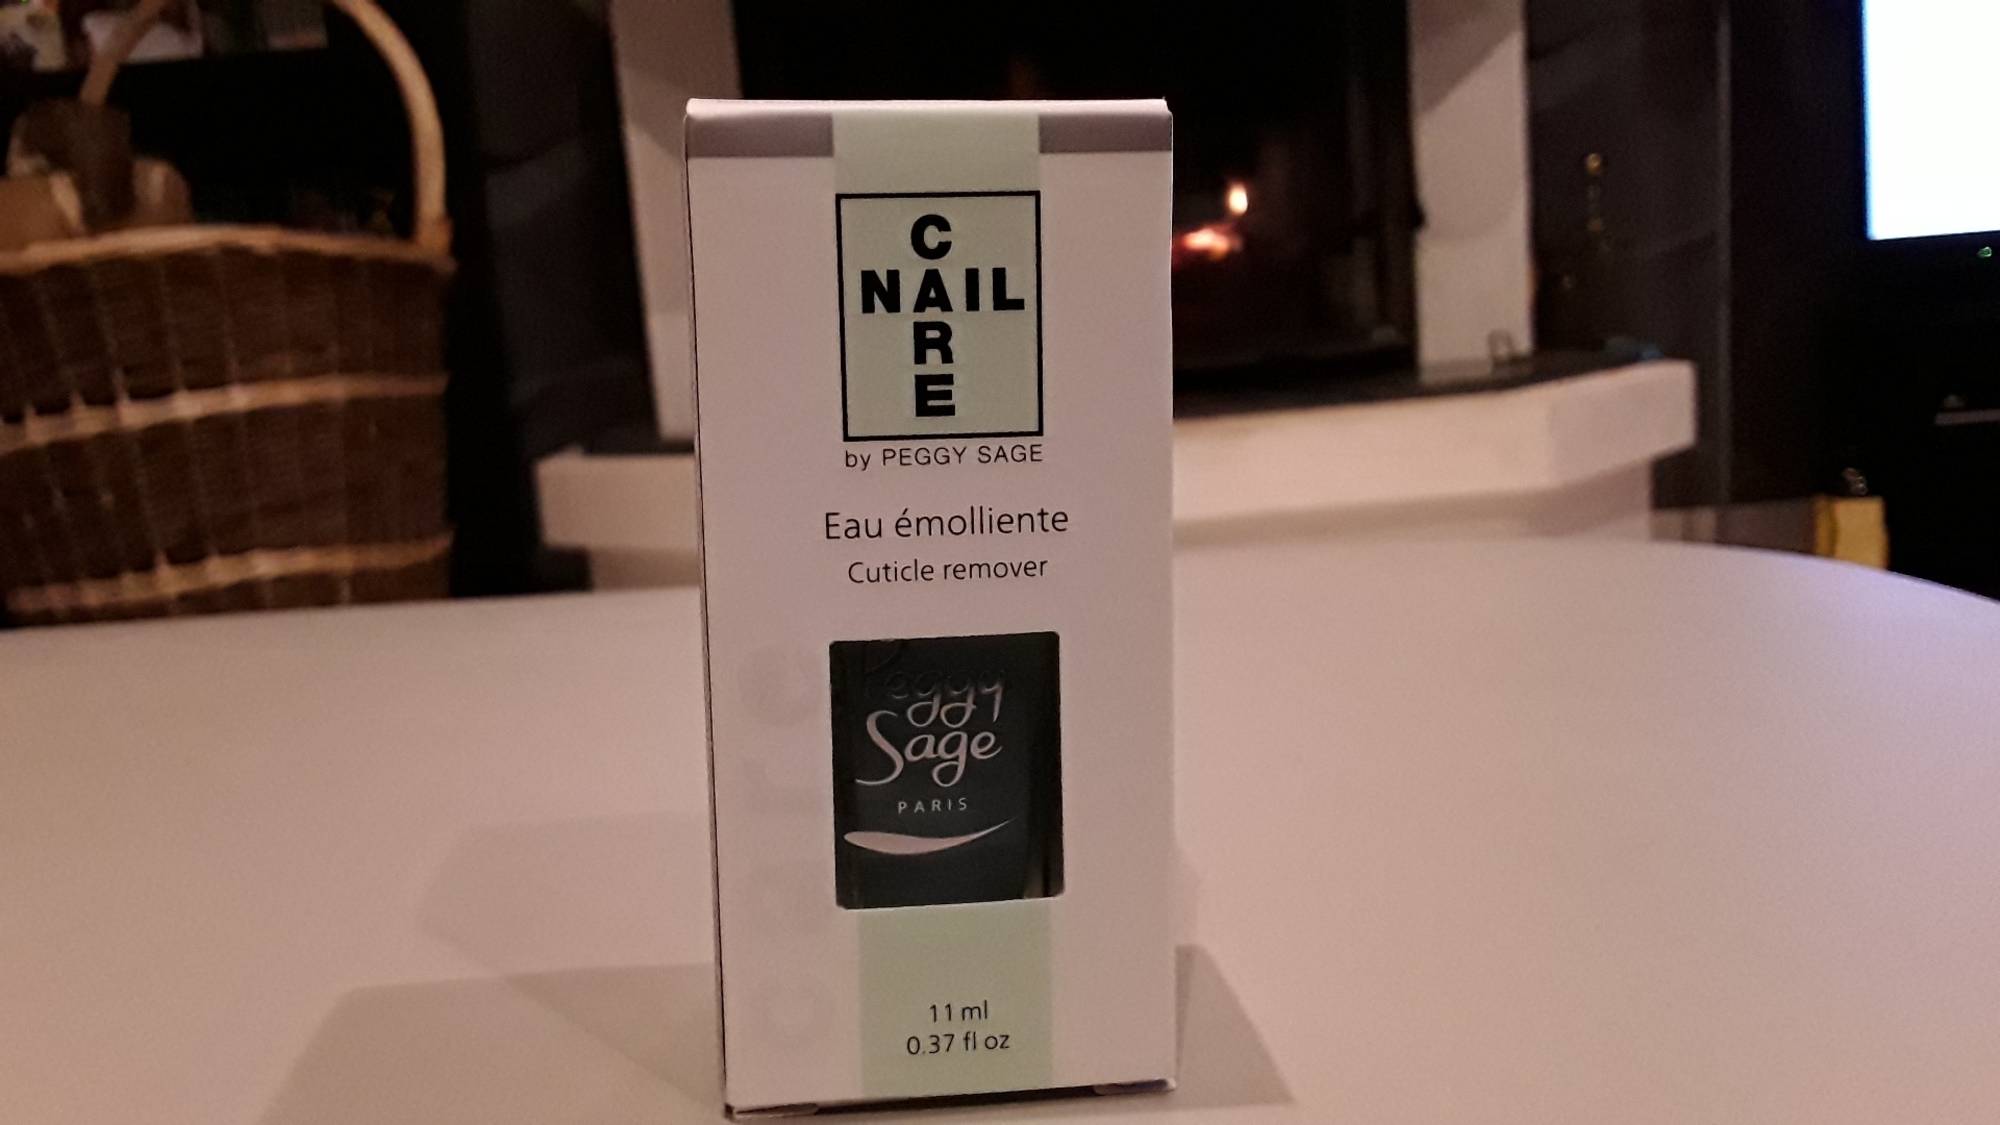 PEGGY SAGE - Nail Care - Eau émolliente cuticle remover